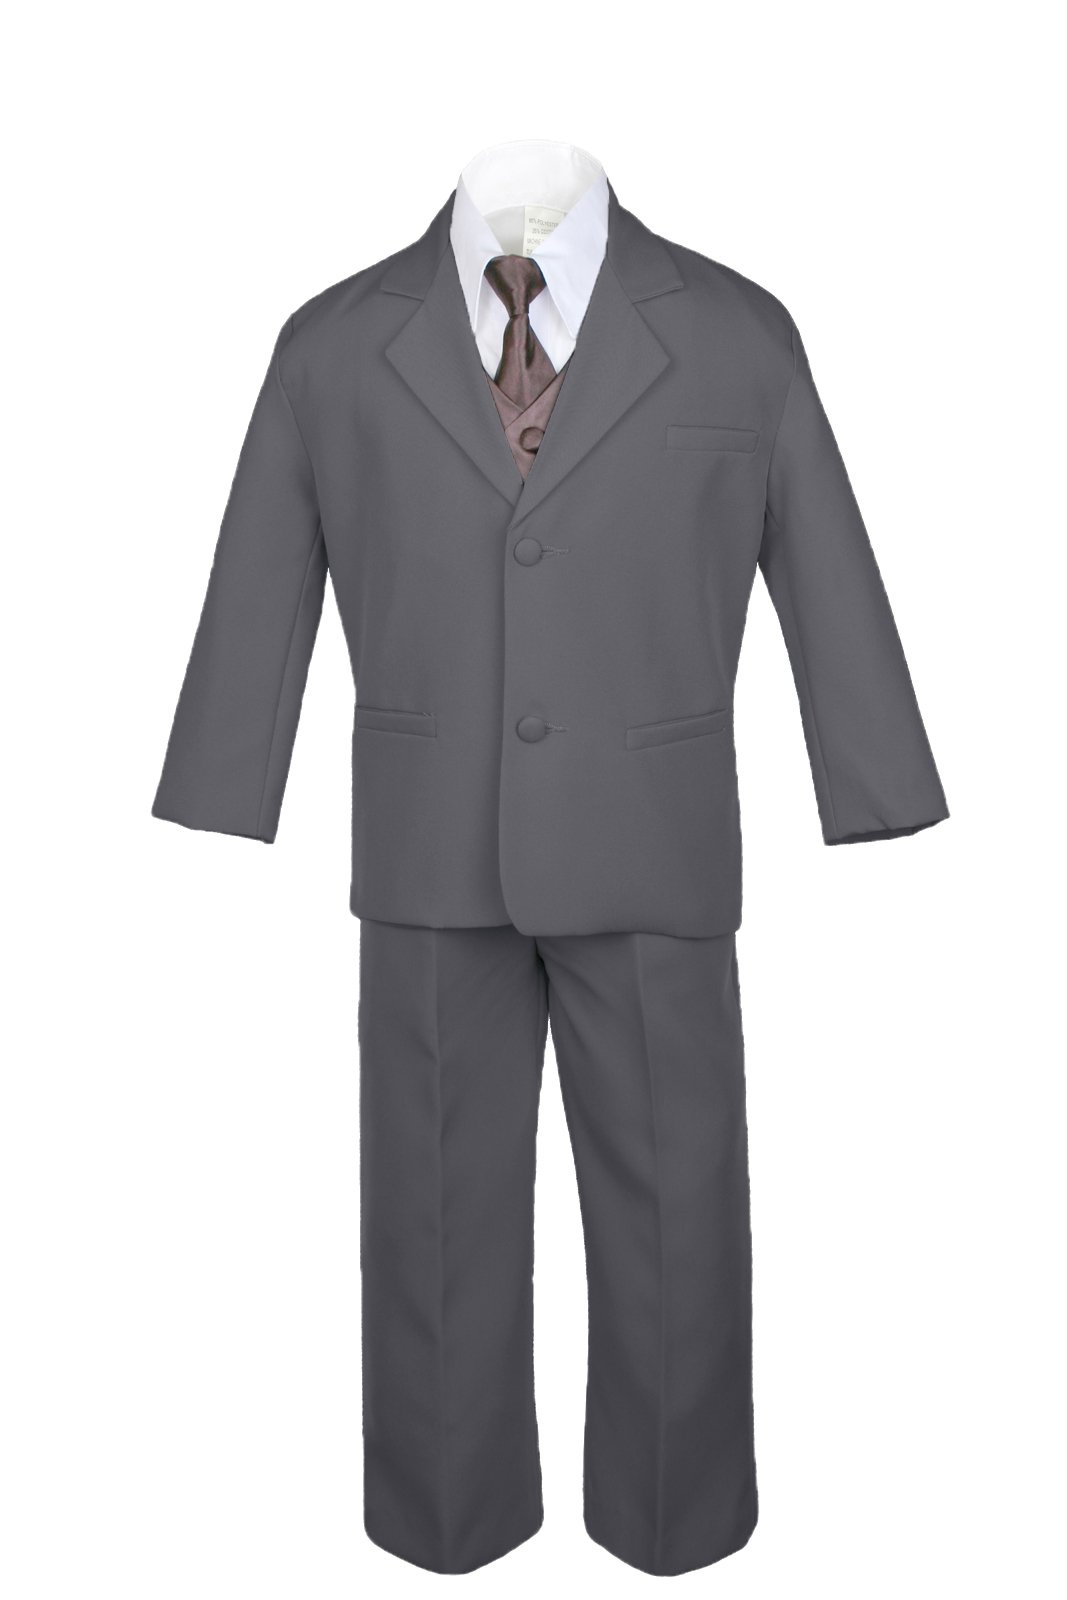 7pc Formal Boy Dark Gray Suits Extra Satin Brown Vest Necktie Set S-20 (18)